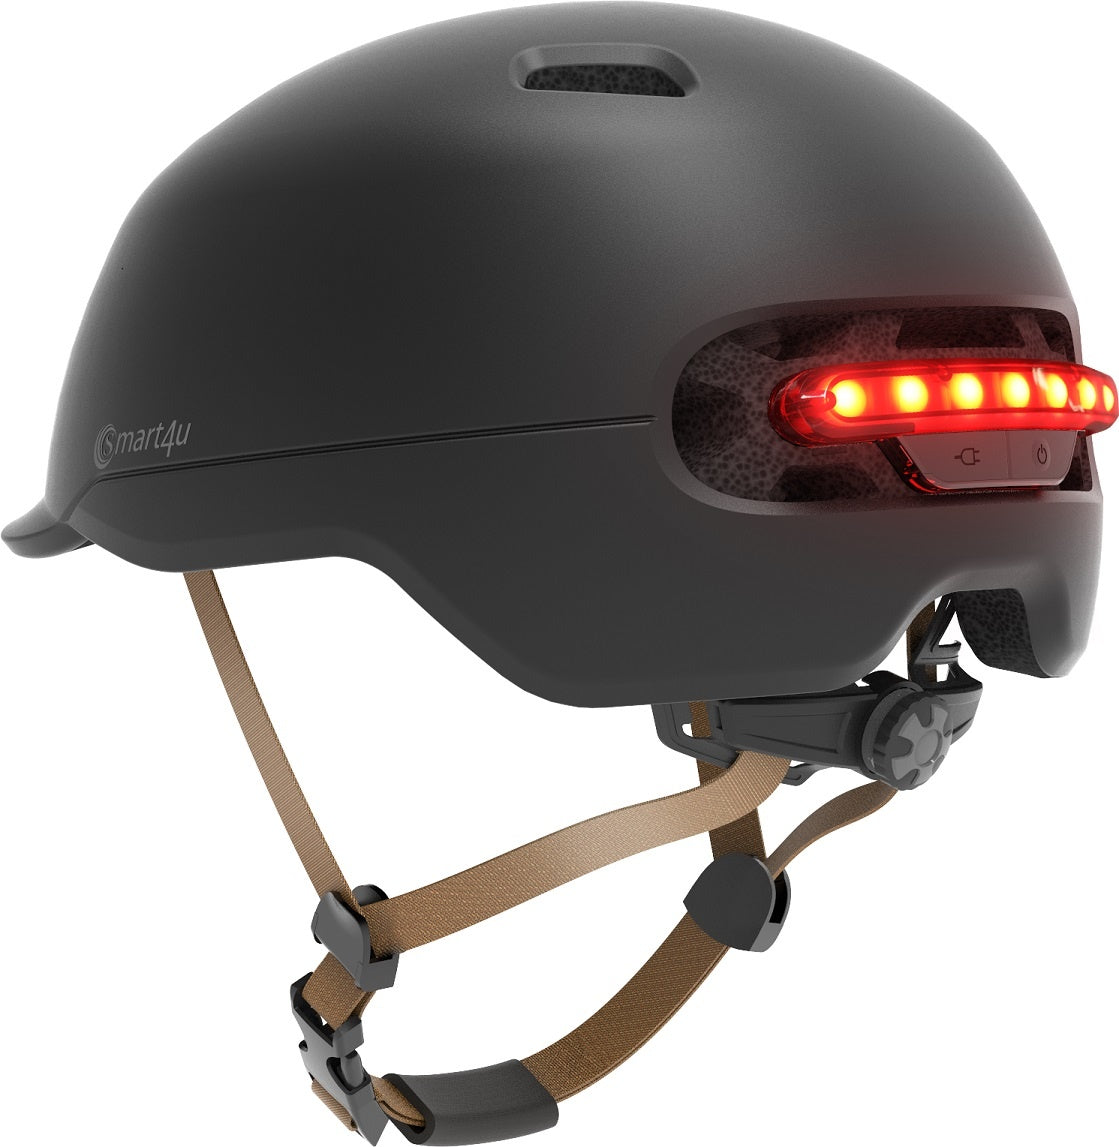 Helmet Smart4U - SH50 Size M/L Black